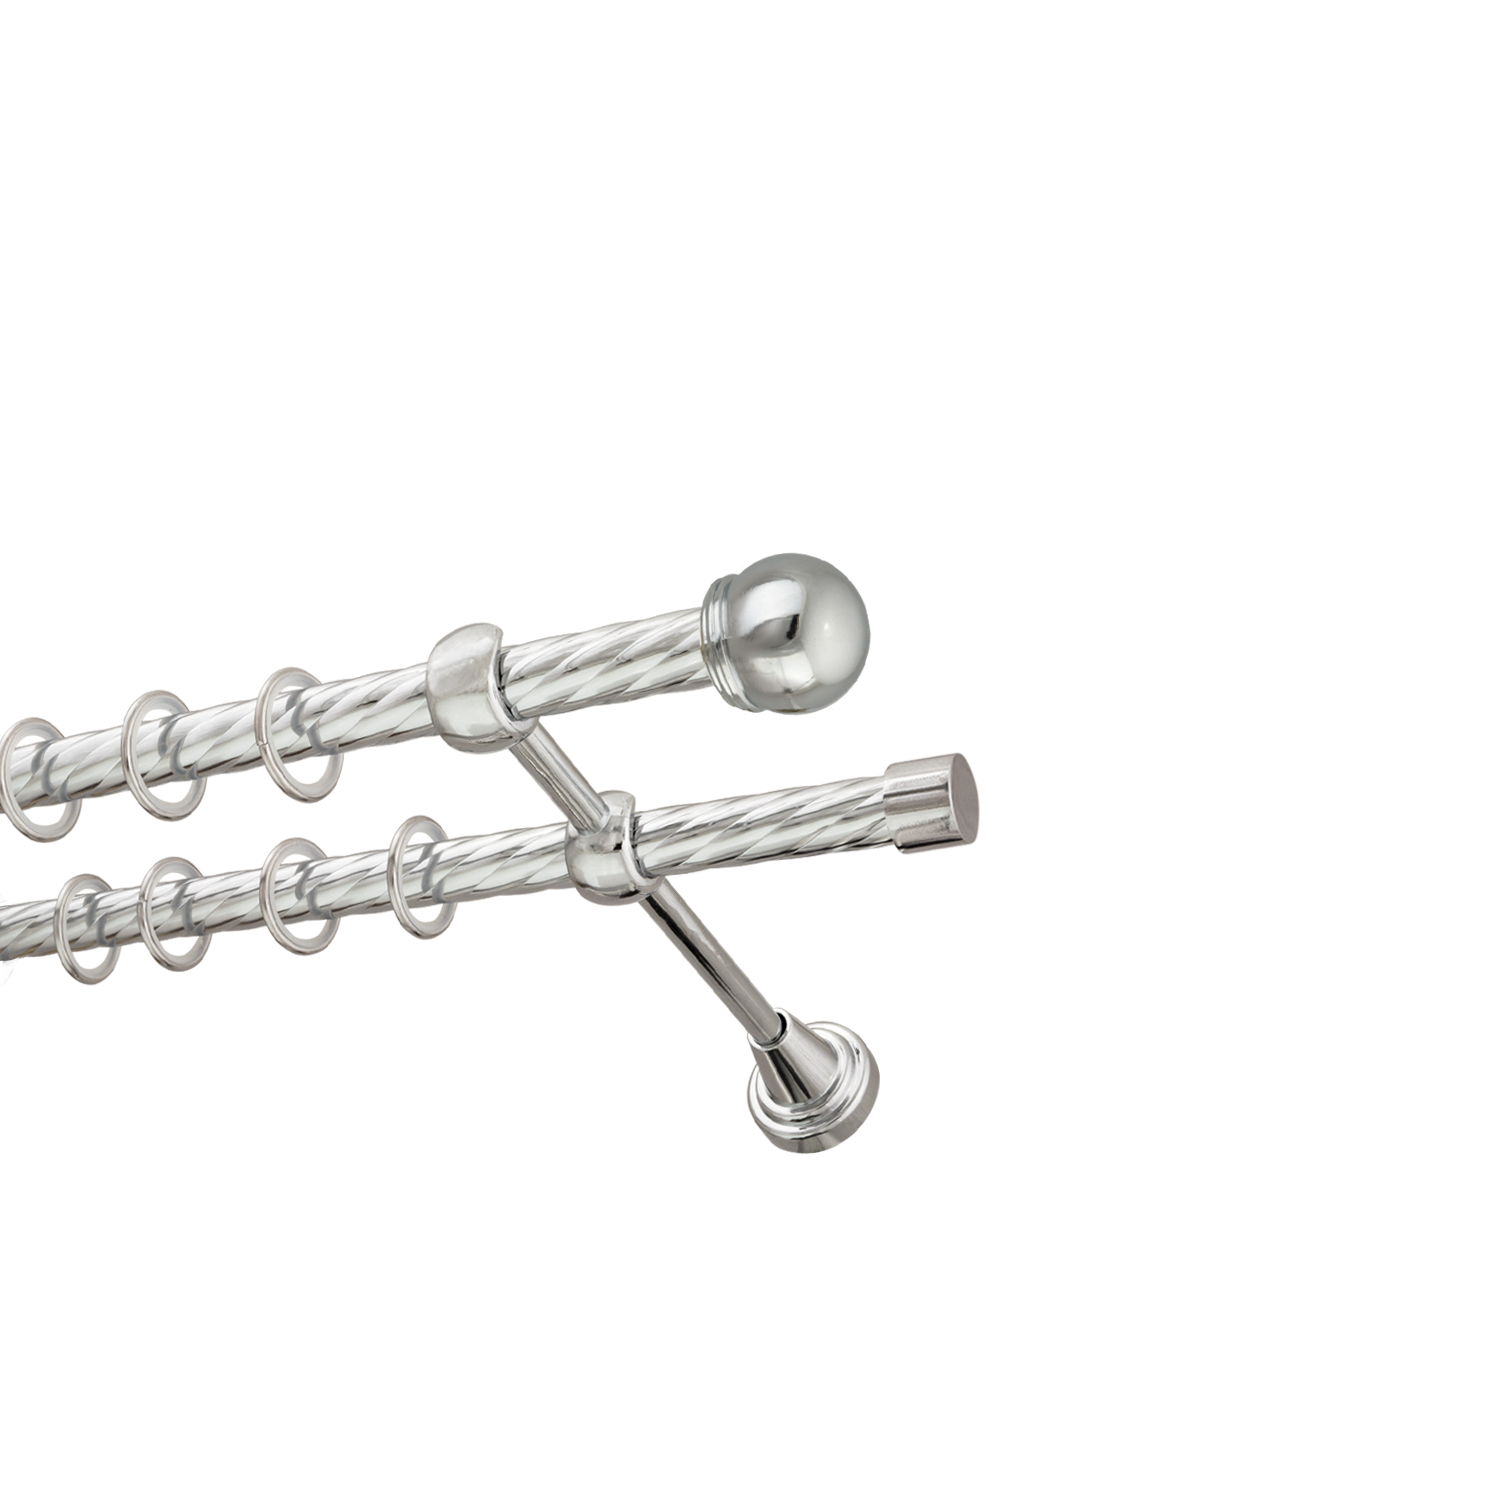 Металлический карниз для штор Вива, двухрядный 16/16 мм, серебро, витая штанга, длина 240 см